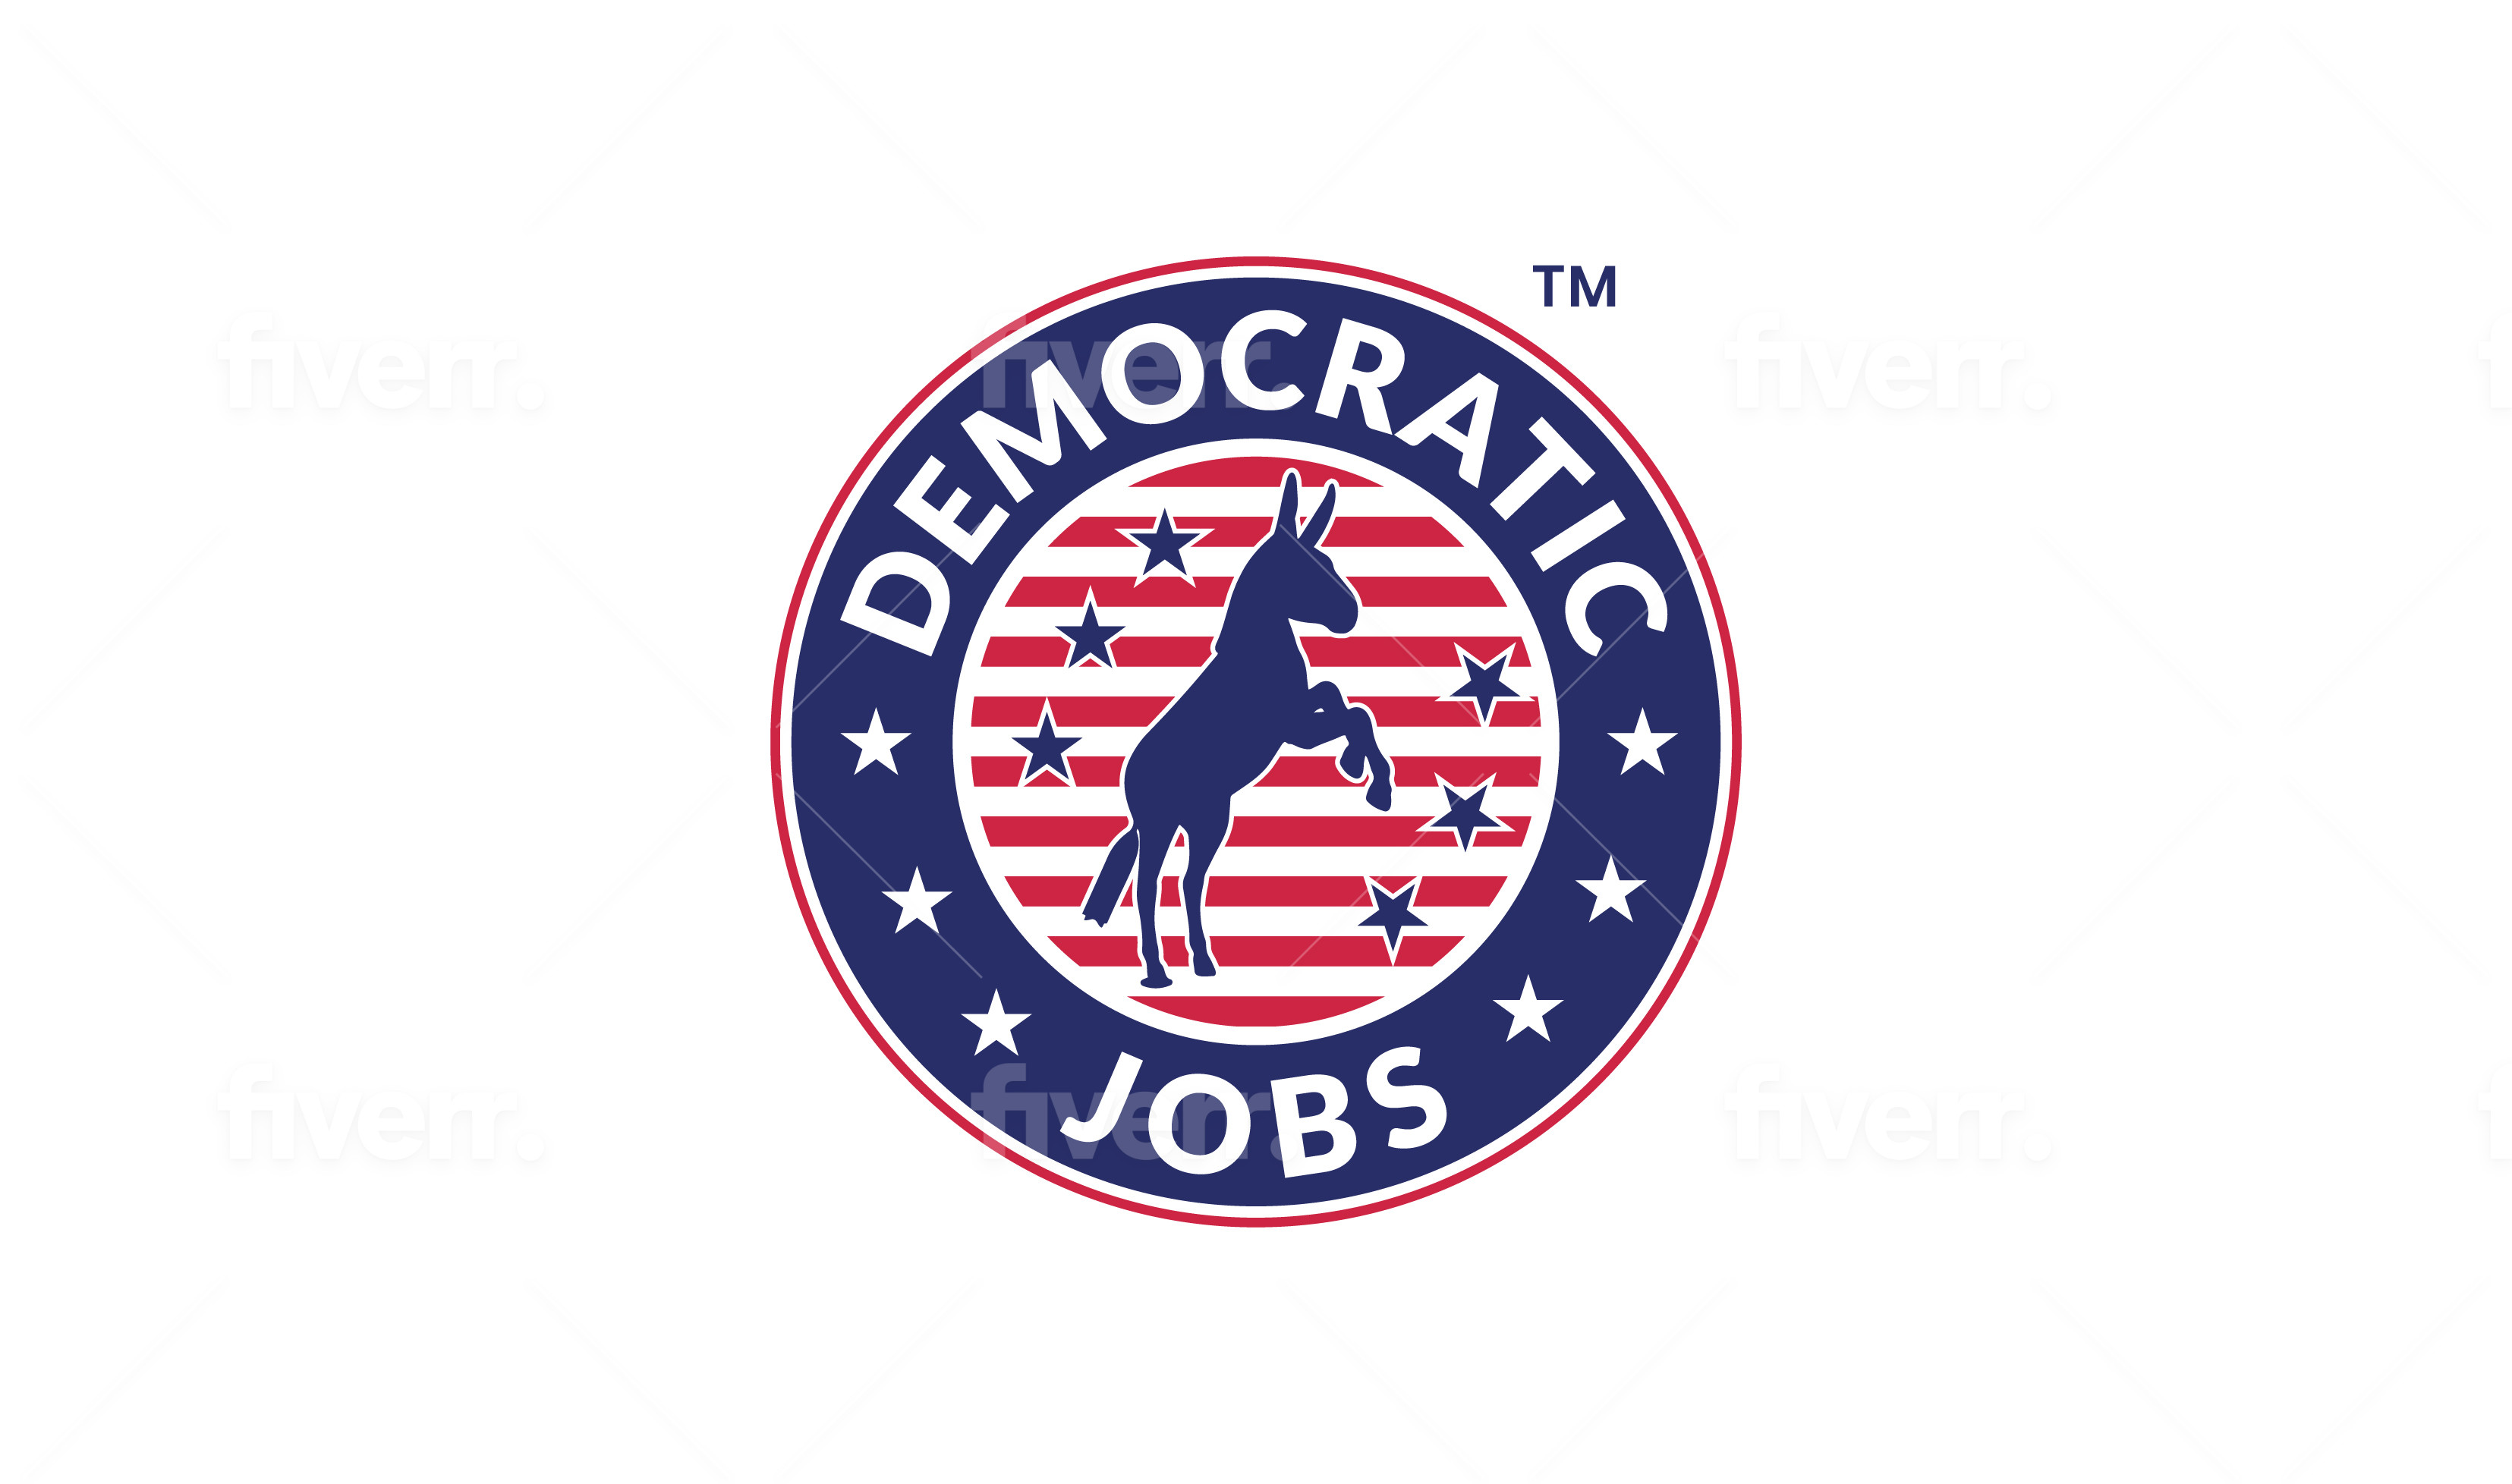 democracy now jobs